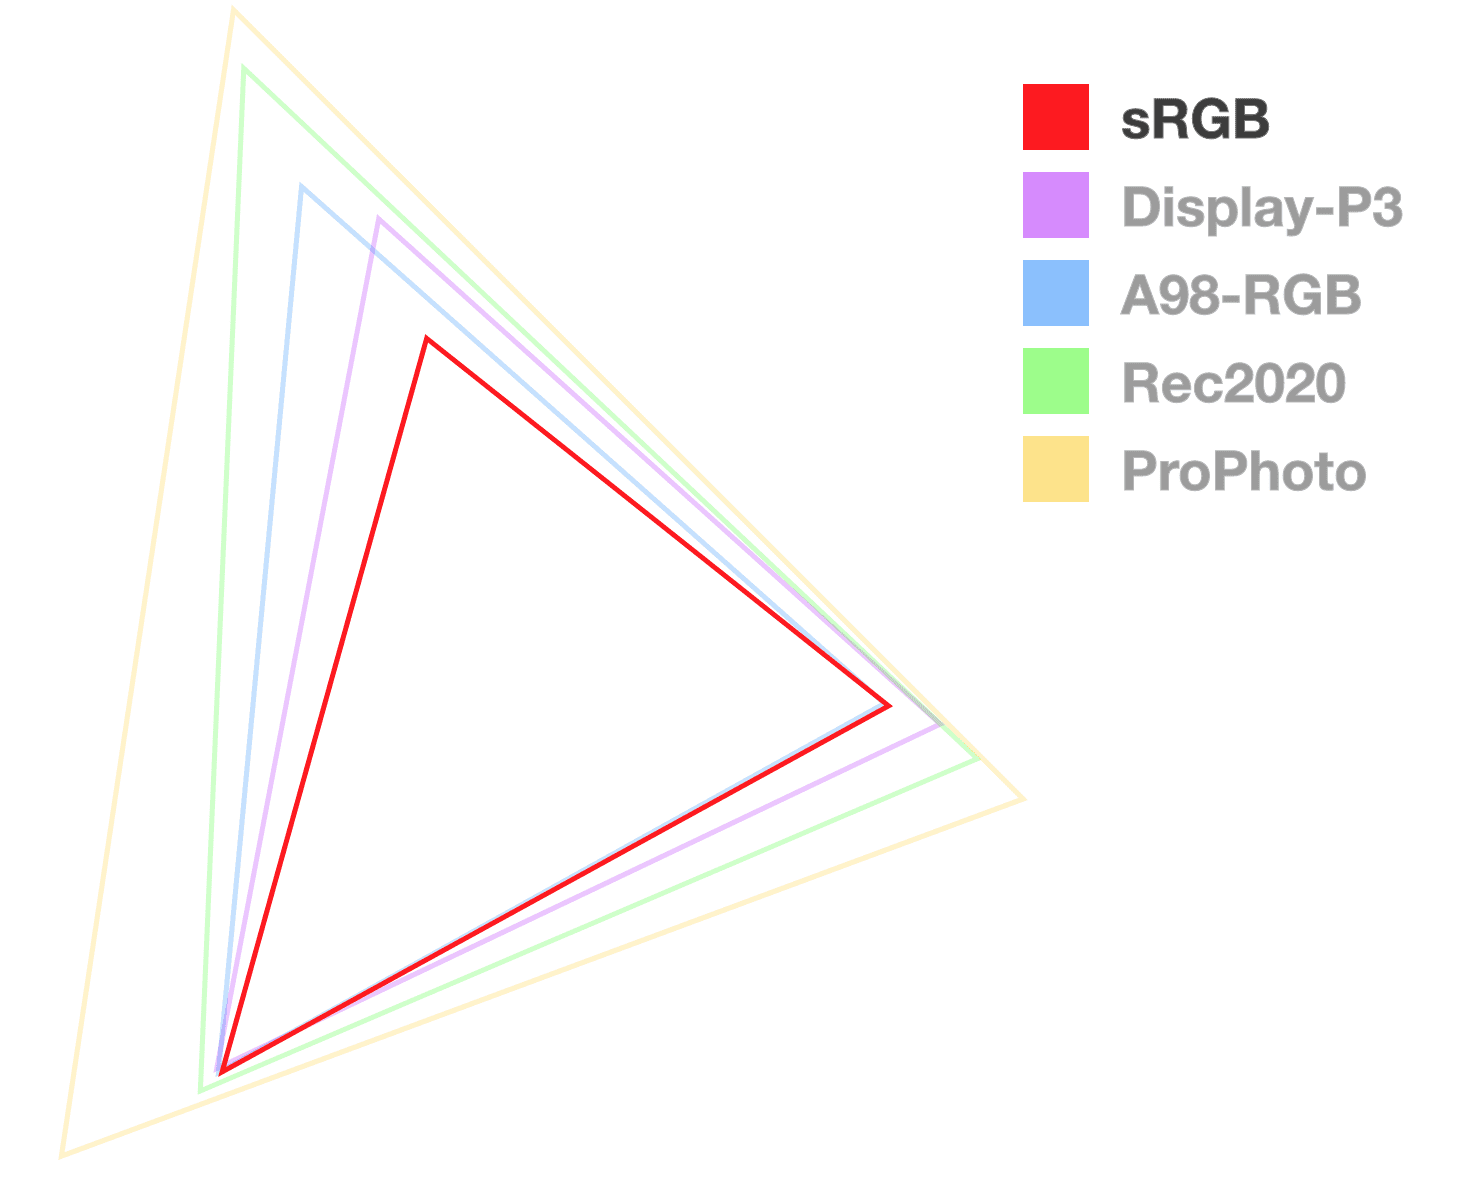 Le triangle sRVB est le seul qui soit entièrement opaque. Il permet de visualiser la taille de la gamme.